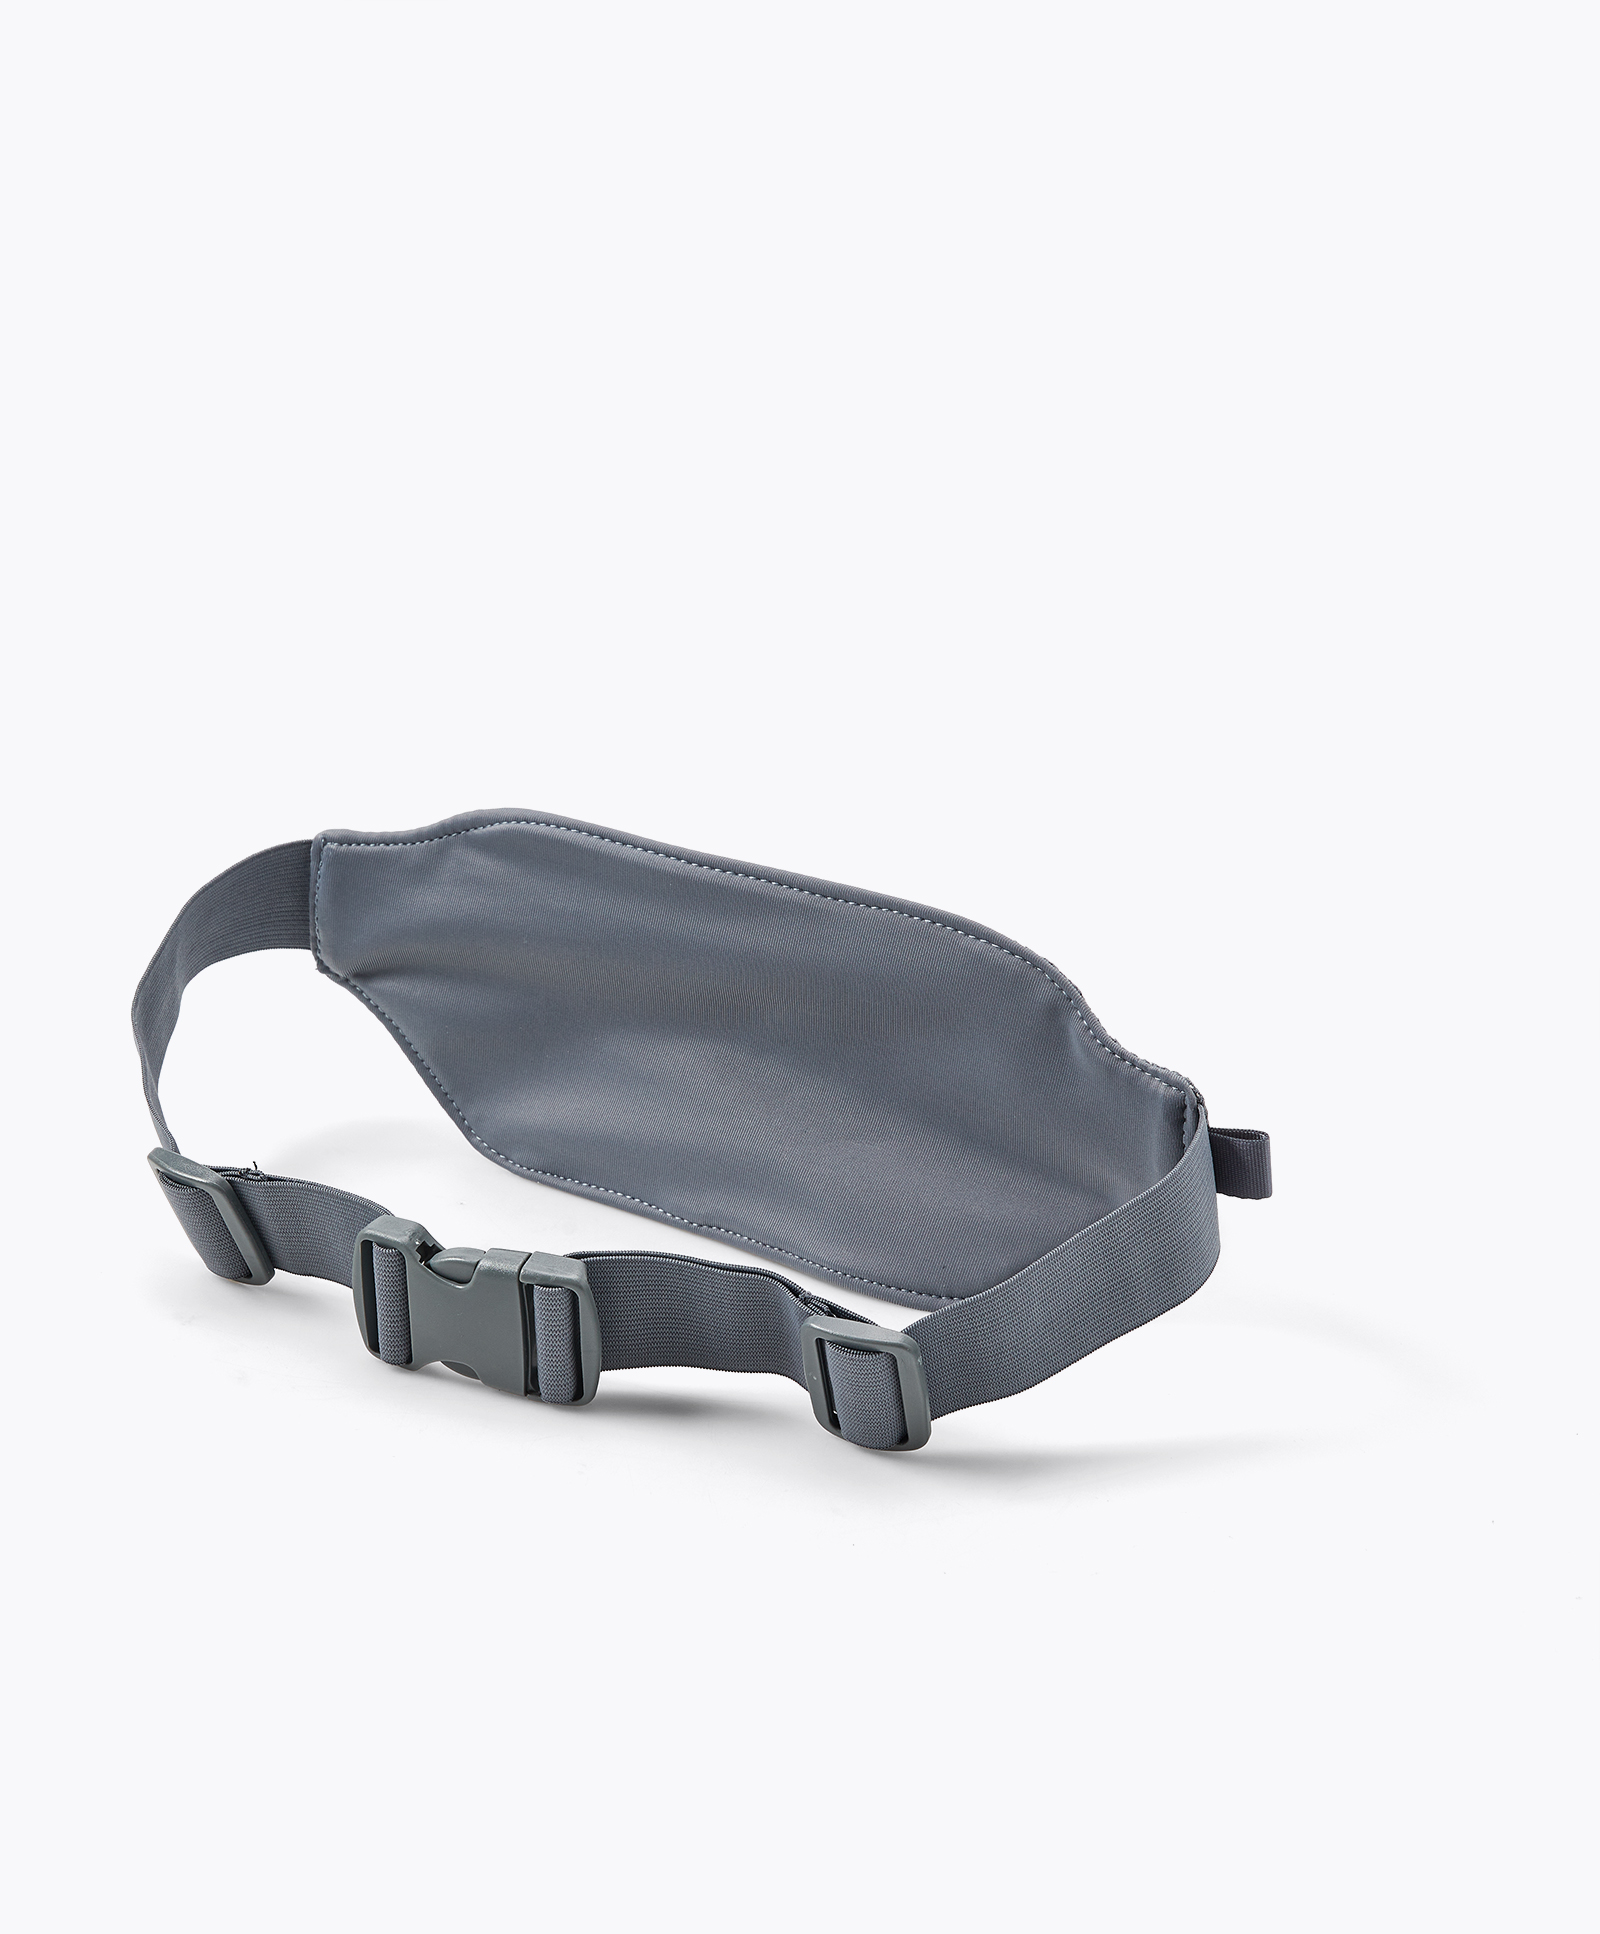 Touchscreen running belt bag